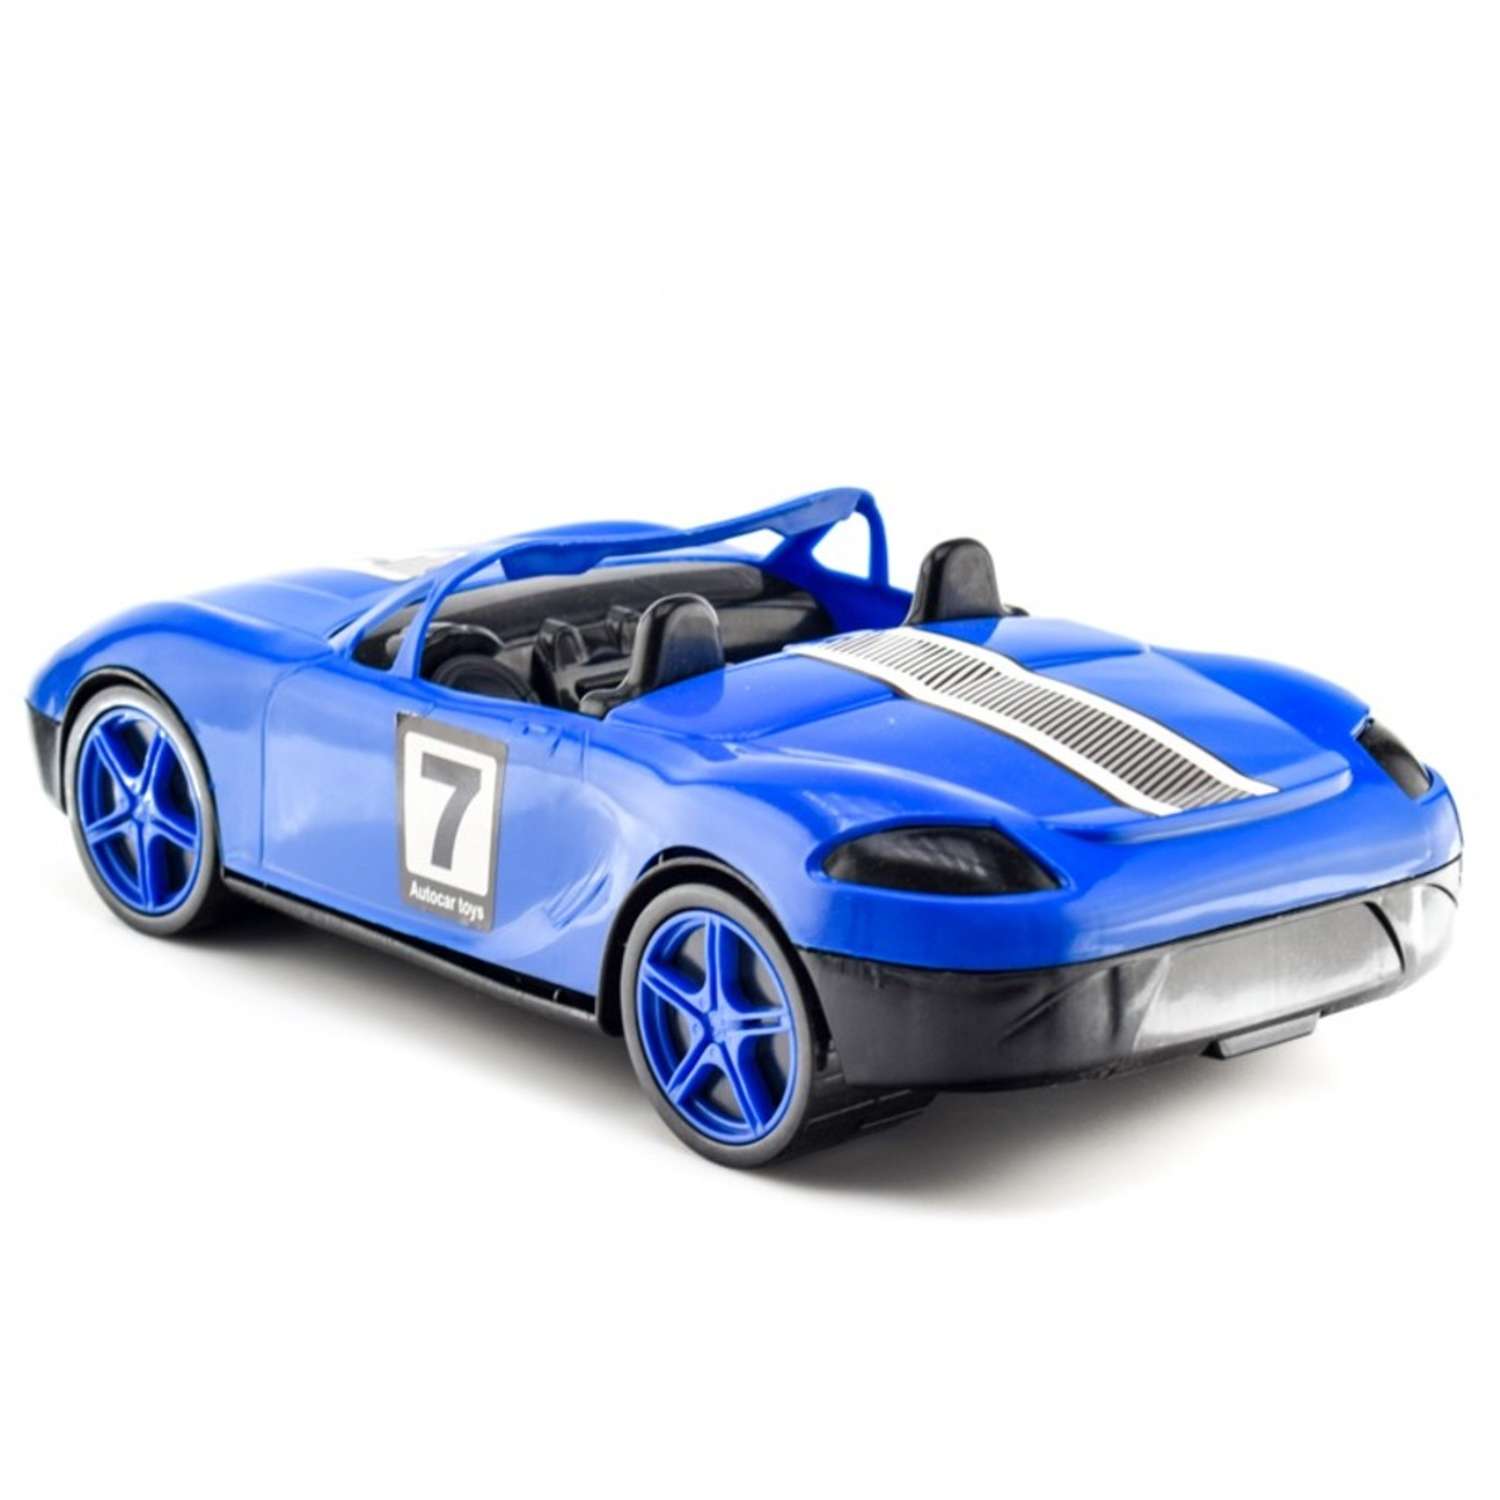 Синяя машинка для детей. Машина кабриолет пластмассовая, 40 см. btg017. 4352 Машинка "кабриолет". Машинка Toy Mix кабриолет пластмассовая. Машинка детская btg017.